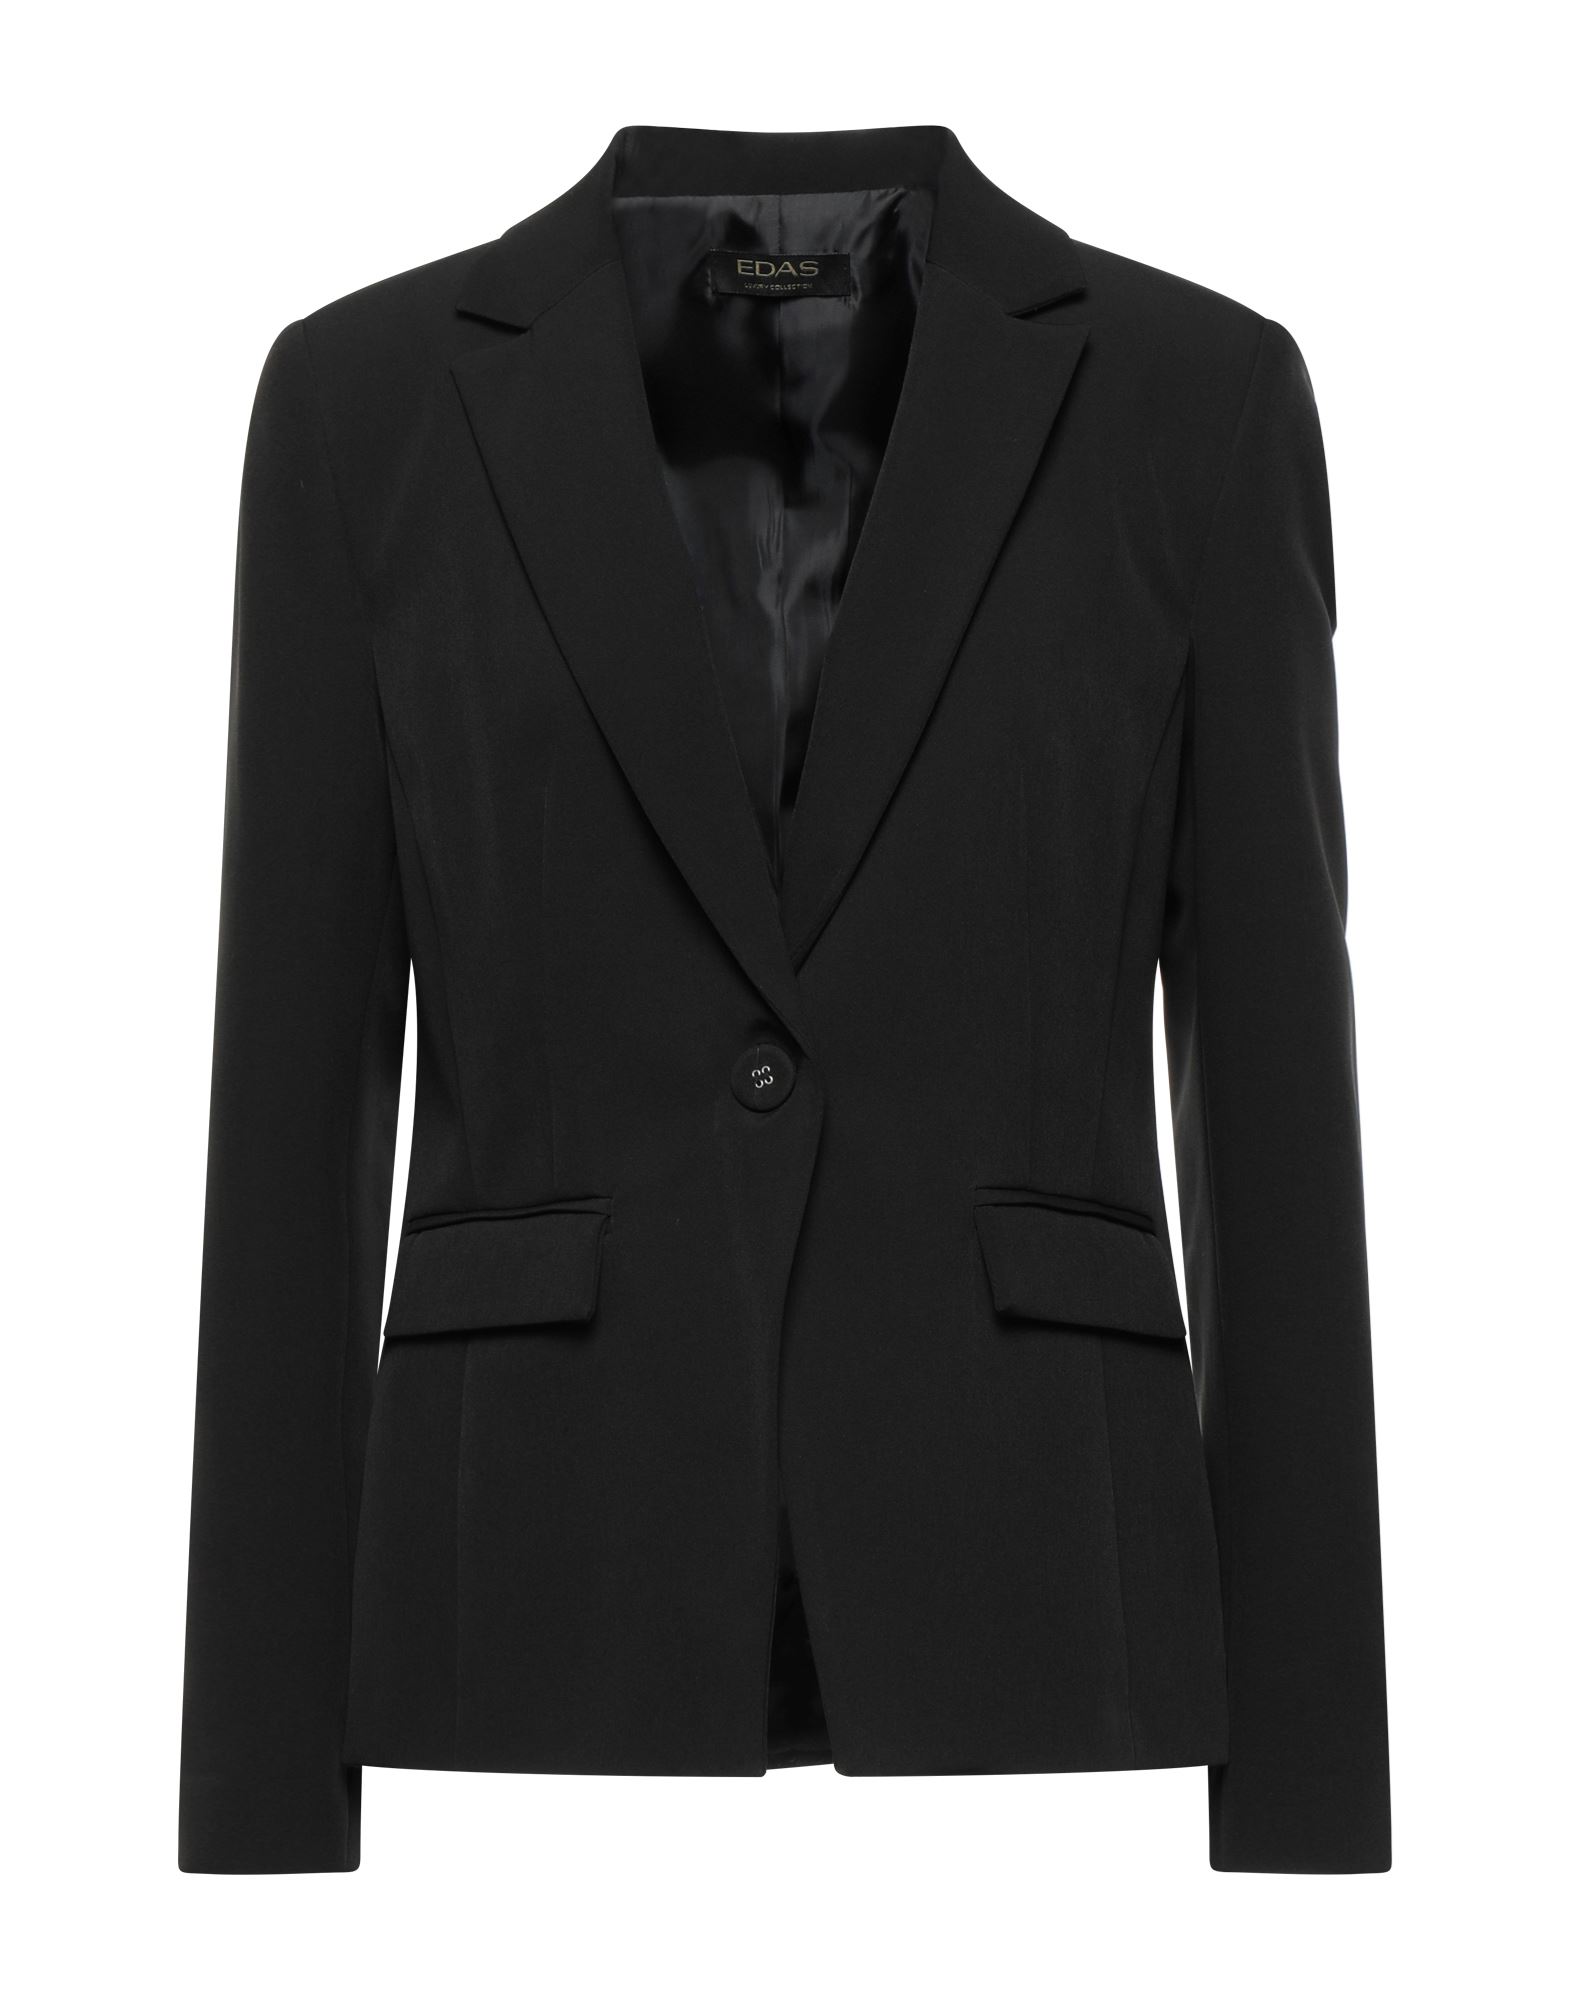 EDAS Suit jackets